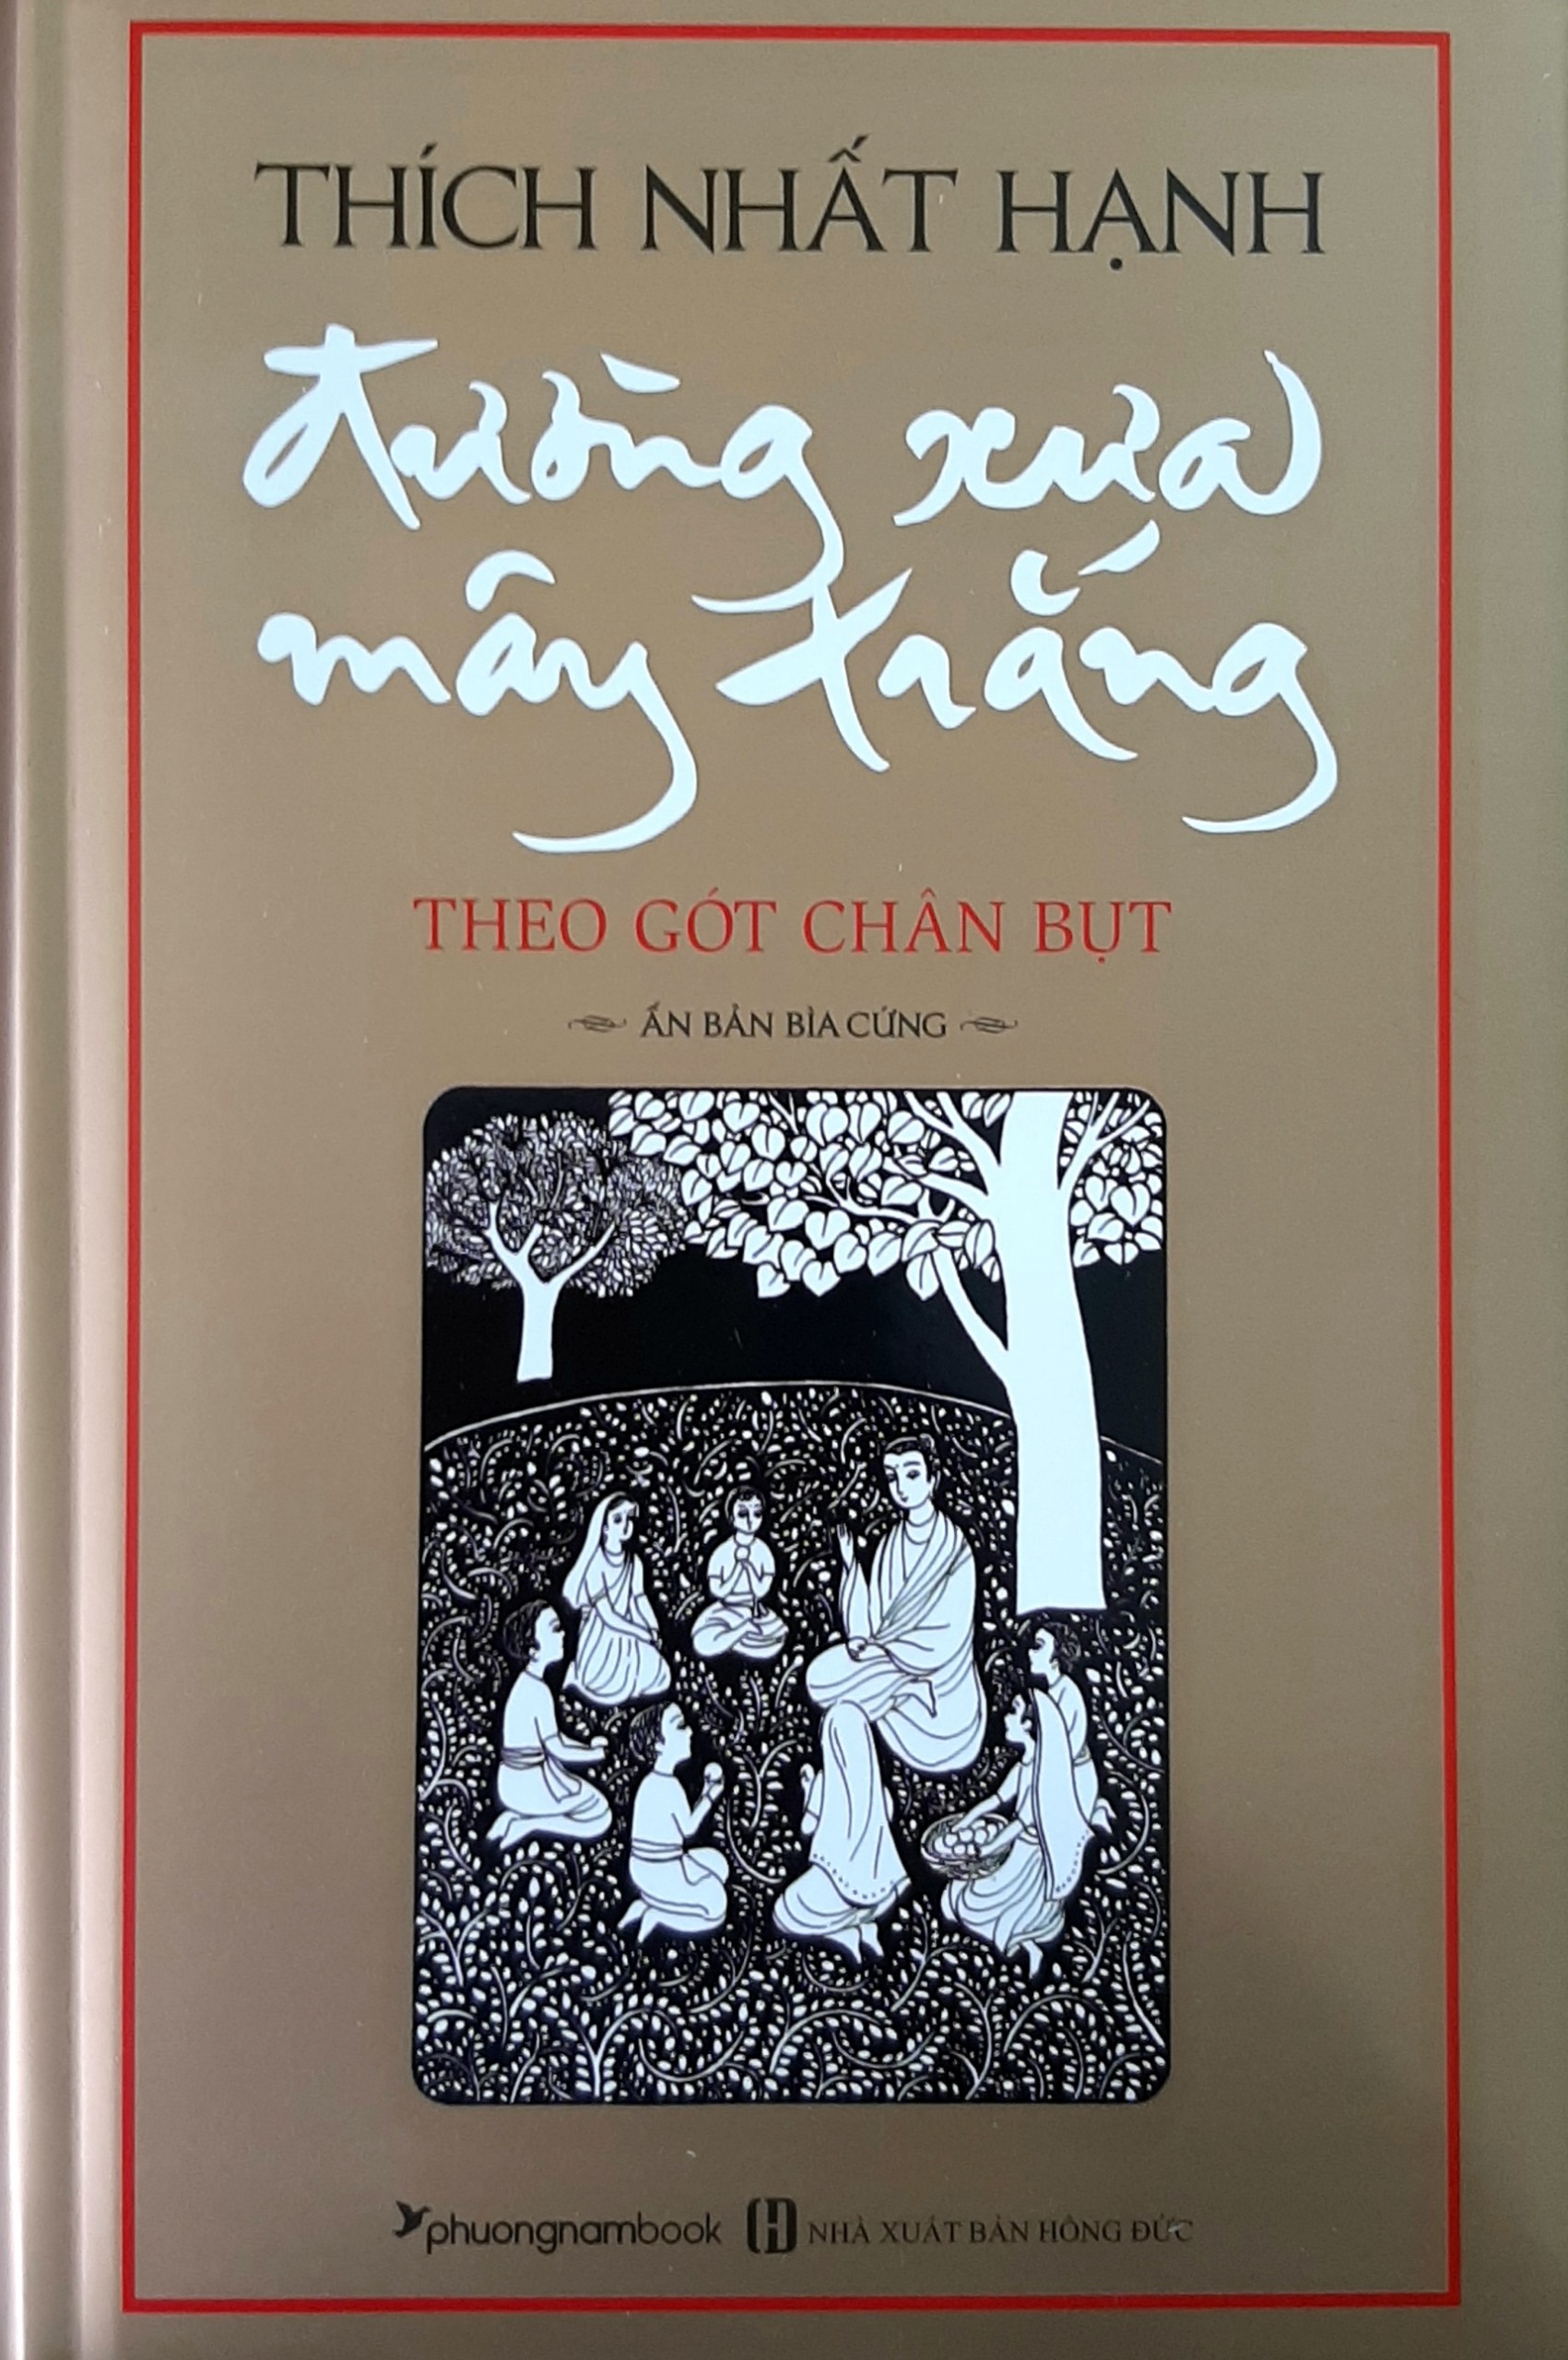 Đường Xưa Mây Trắng - bìa cứng (Thích Nhất Hạnh) - Cuốn sách hay nhất viết về cuộc đời Đức Phật